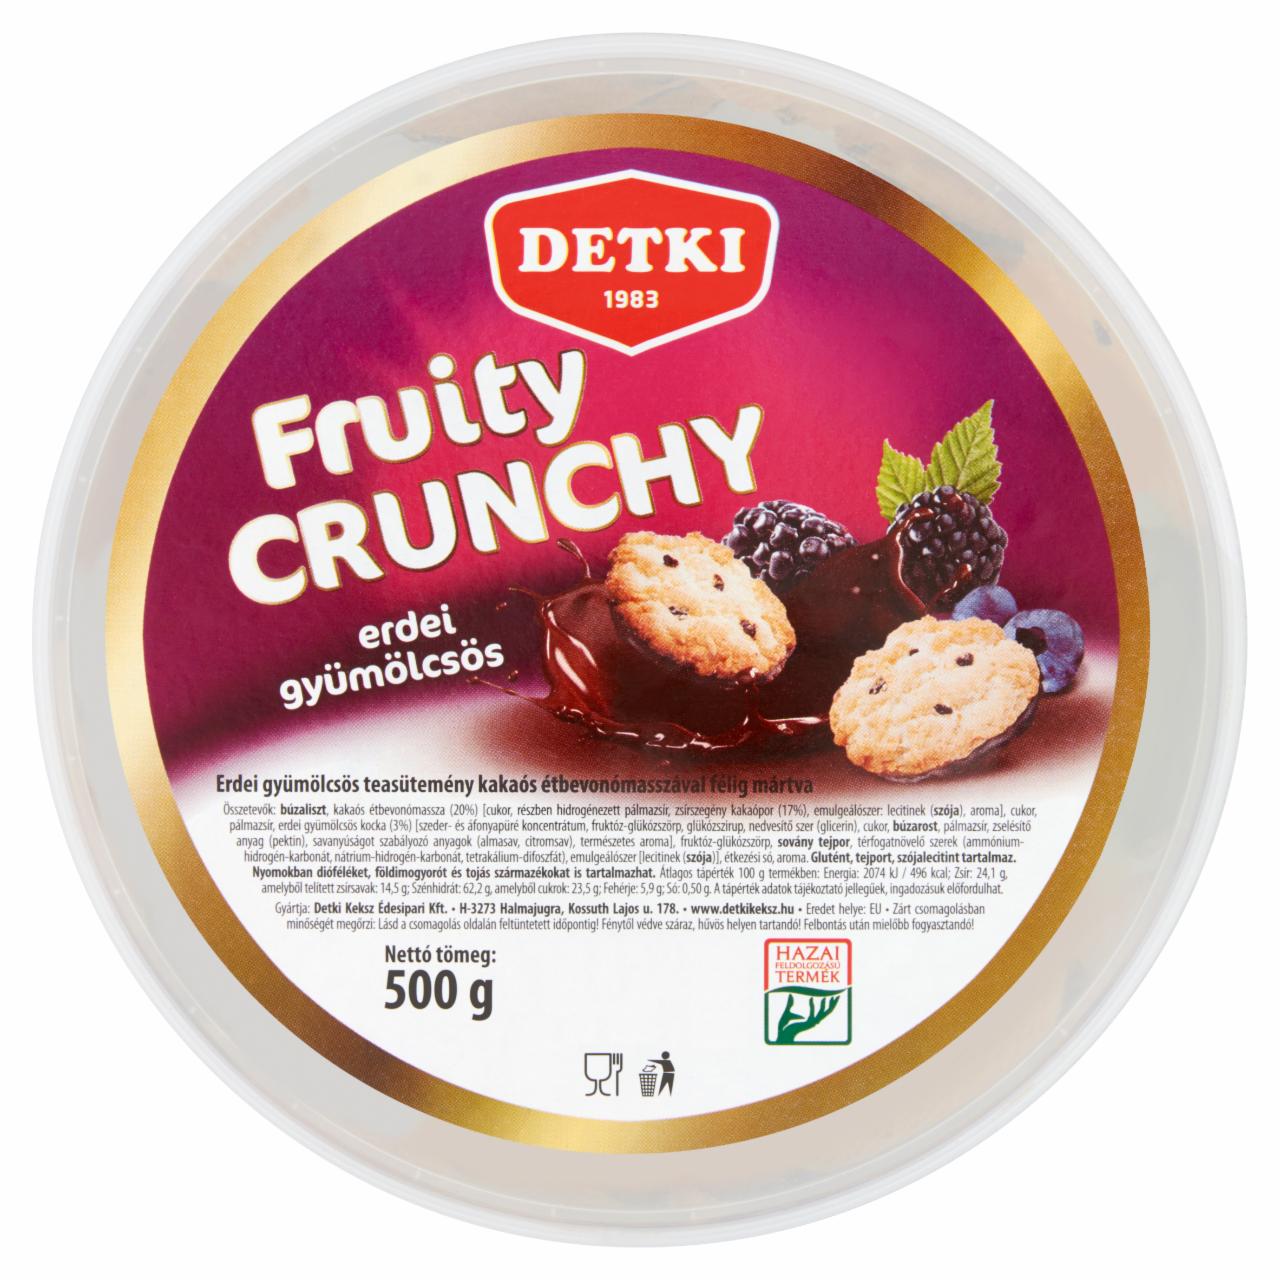 Képek - Detki Fruity Crunchy erdei gyümölcsös teasütemény kakaós étbevonómasszával félig mártva 500 g